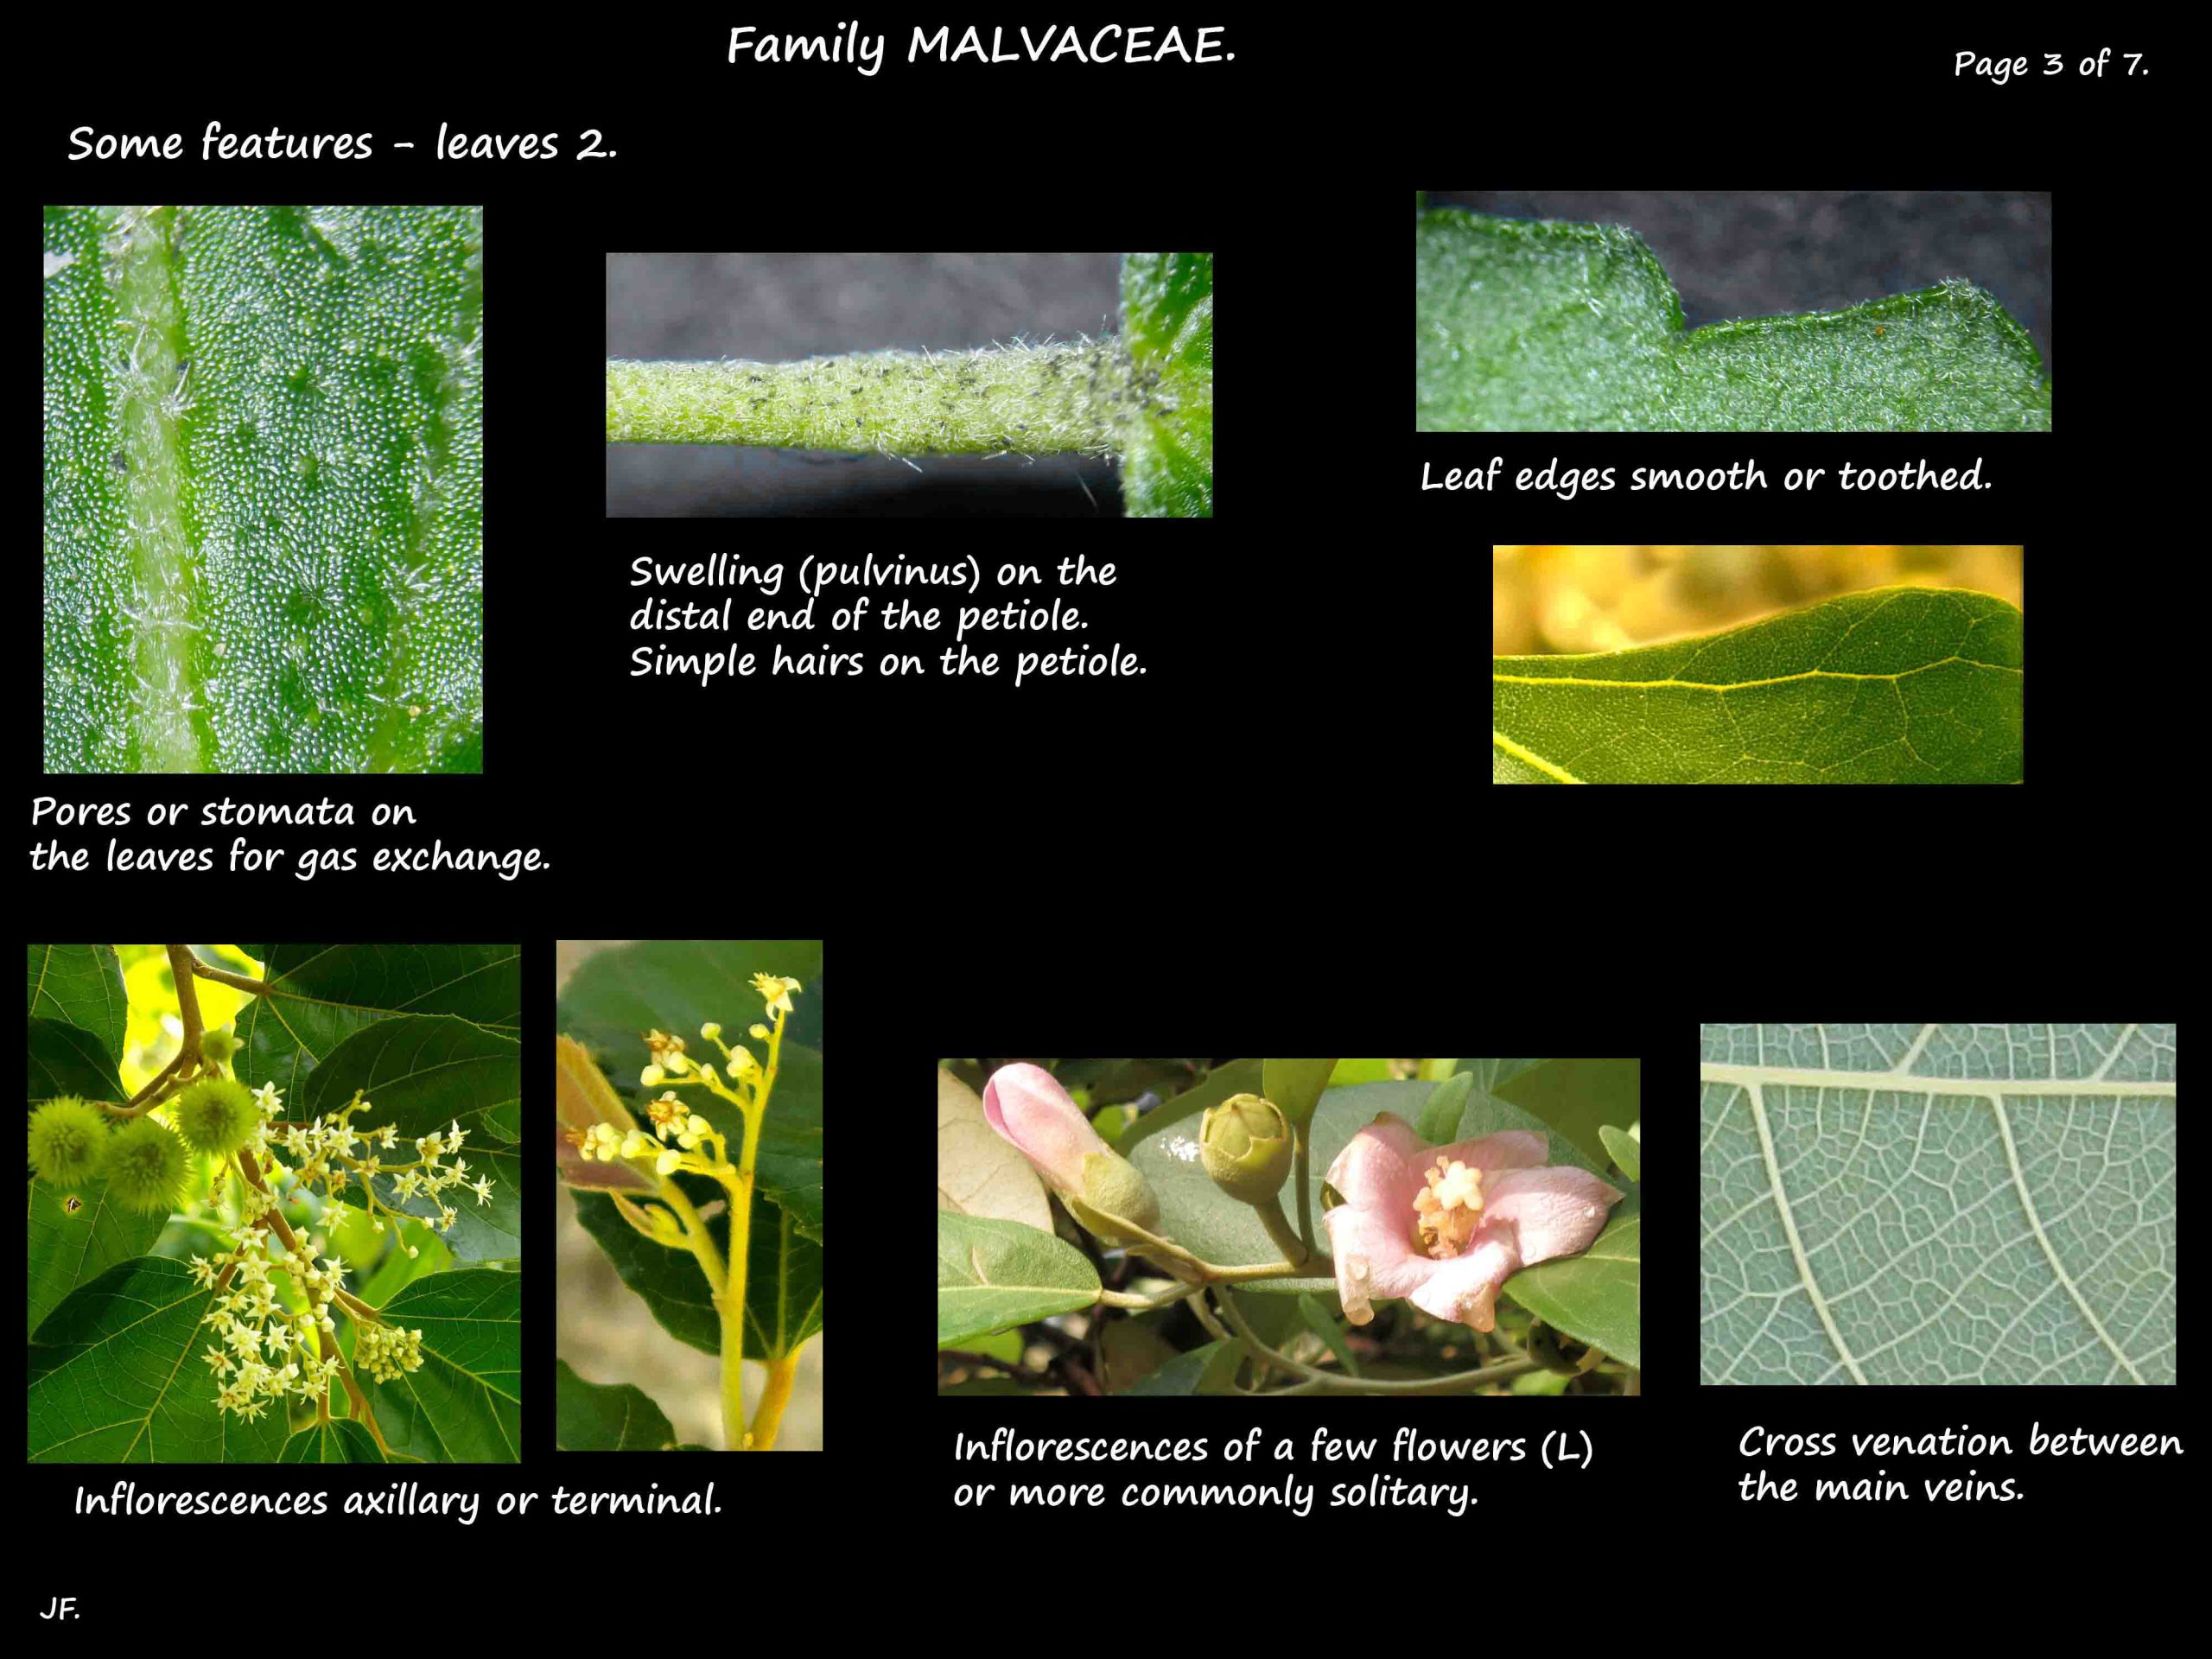 3 Malvaceae inflorescences